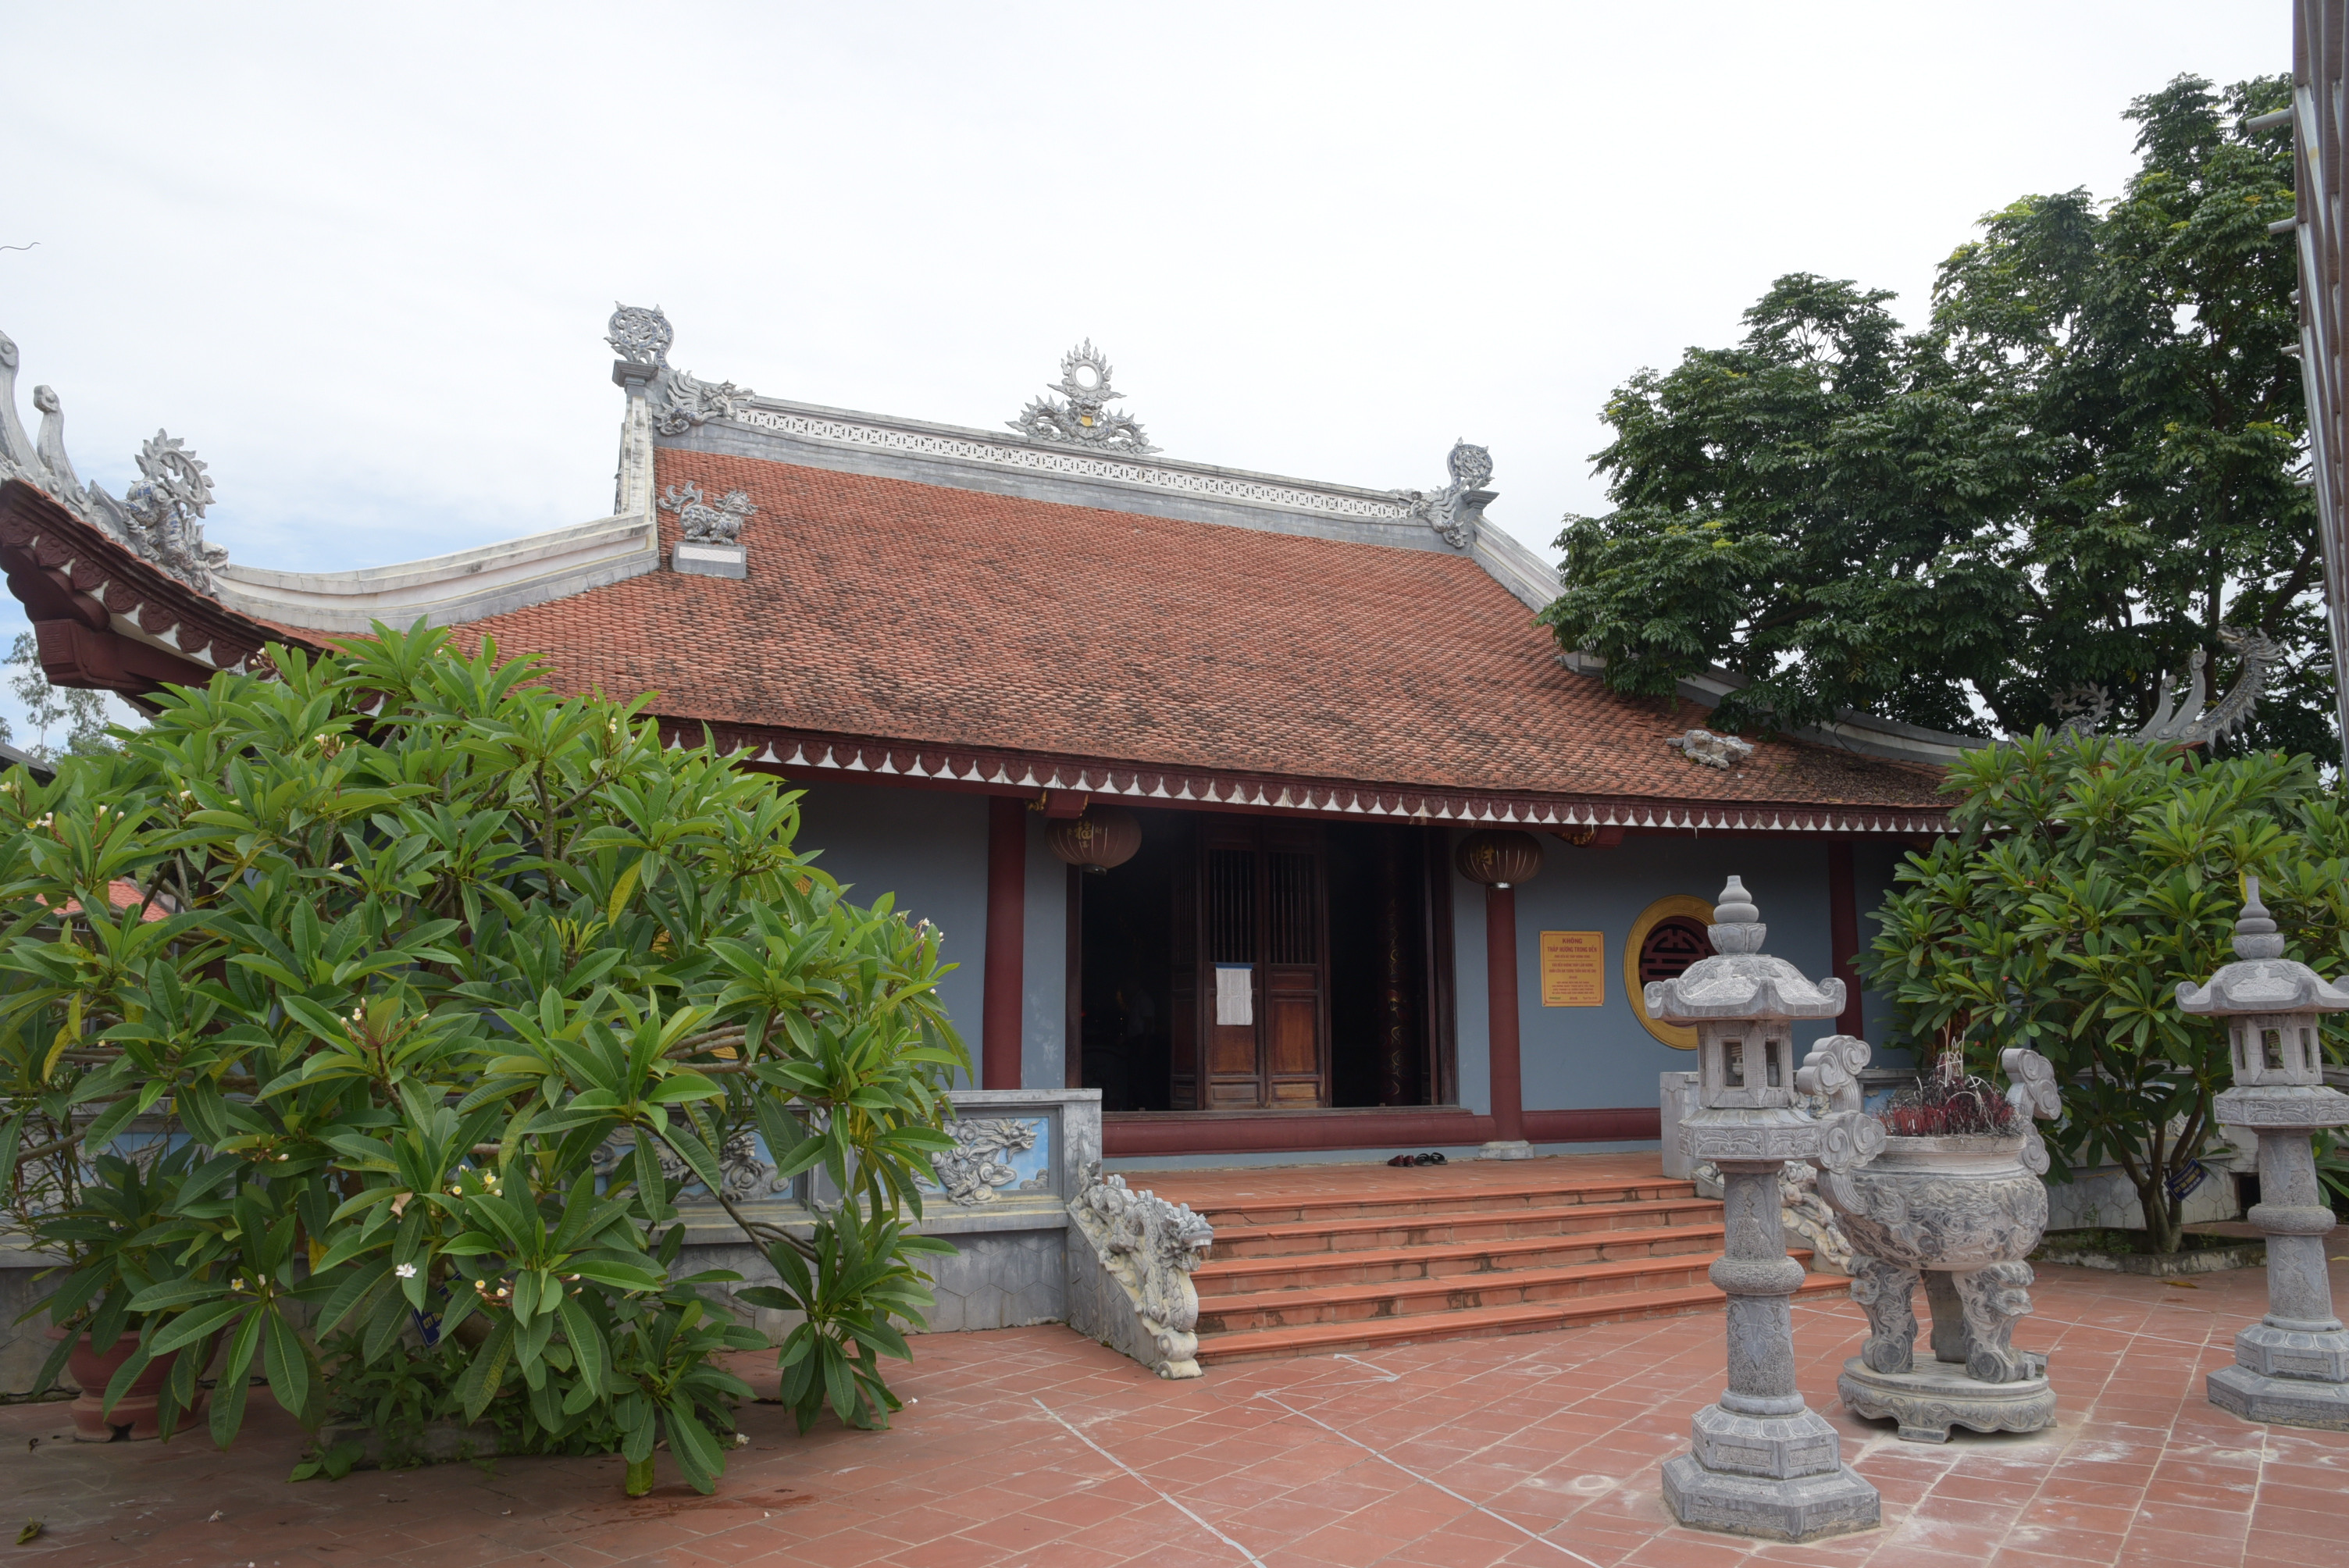 Đền thờ Lý Nhật Quang tại Vĩnh Sơn - Anh Sơn - Đô Lương. Ảnh: Sỹ Minh